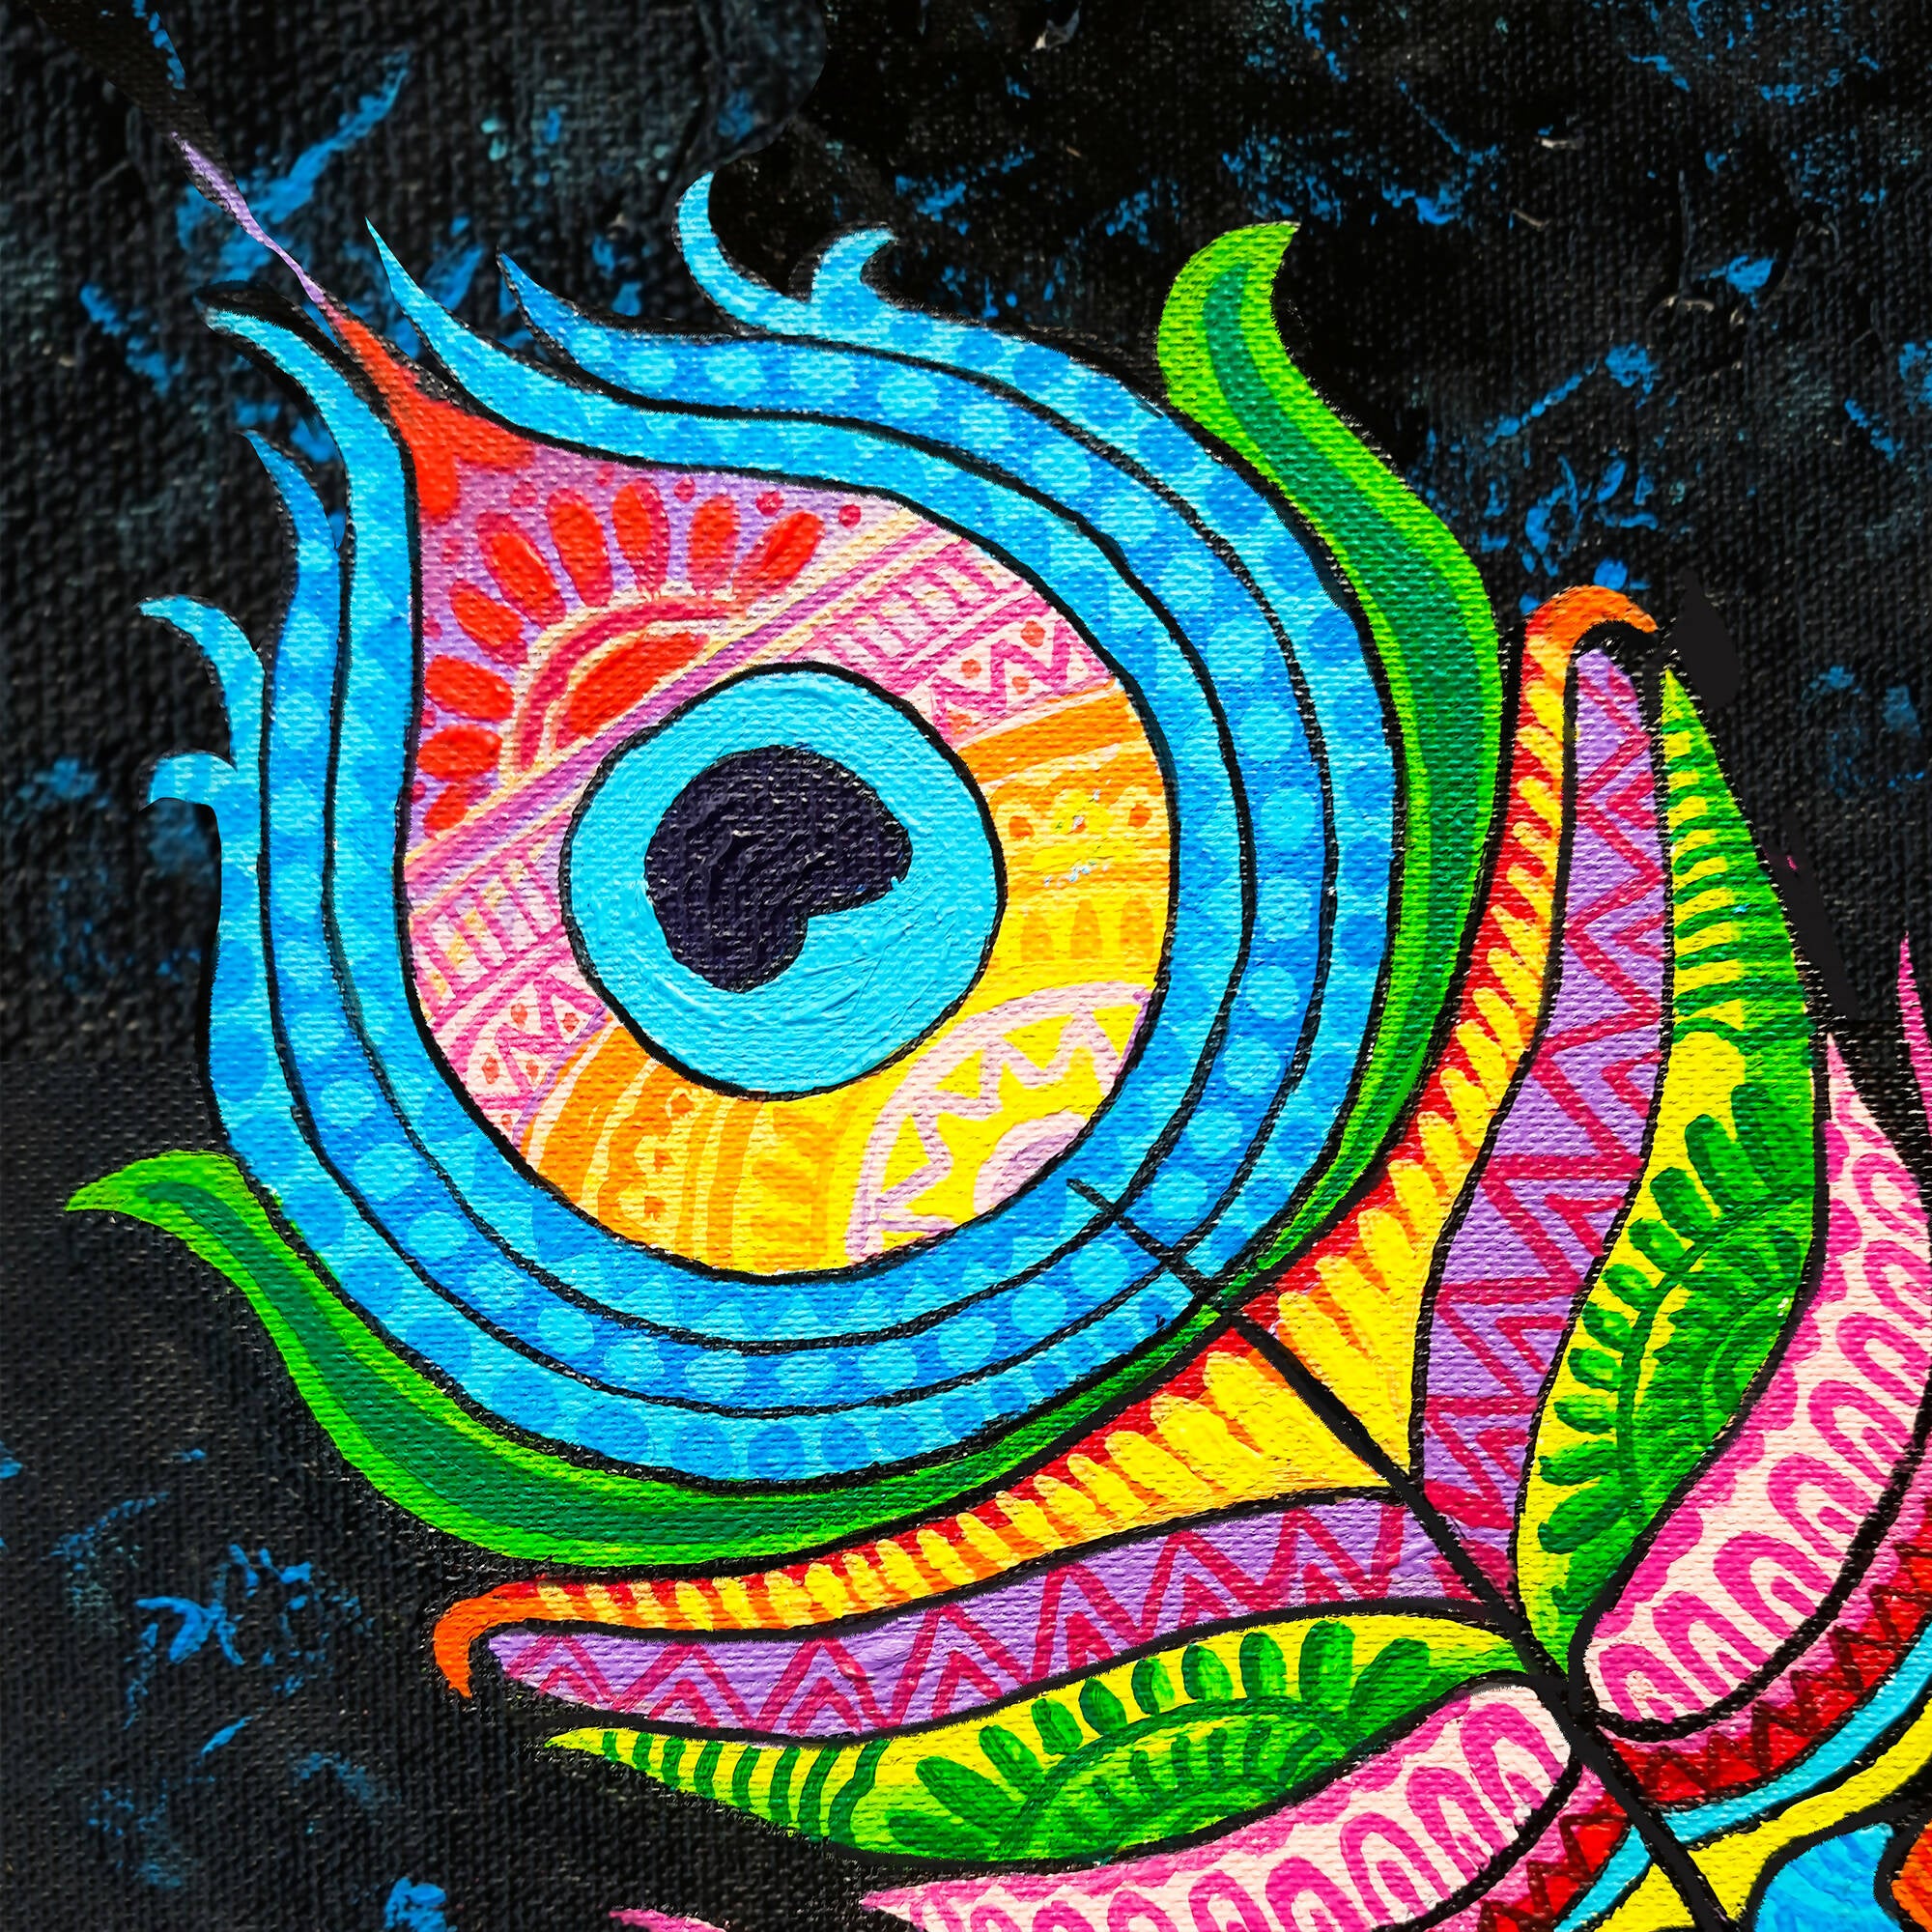 Mandala art/painting on canvas